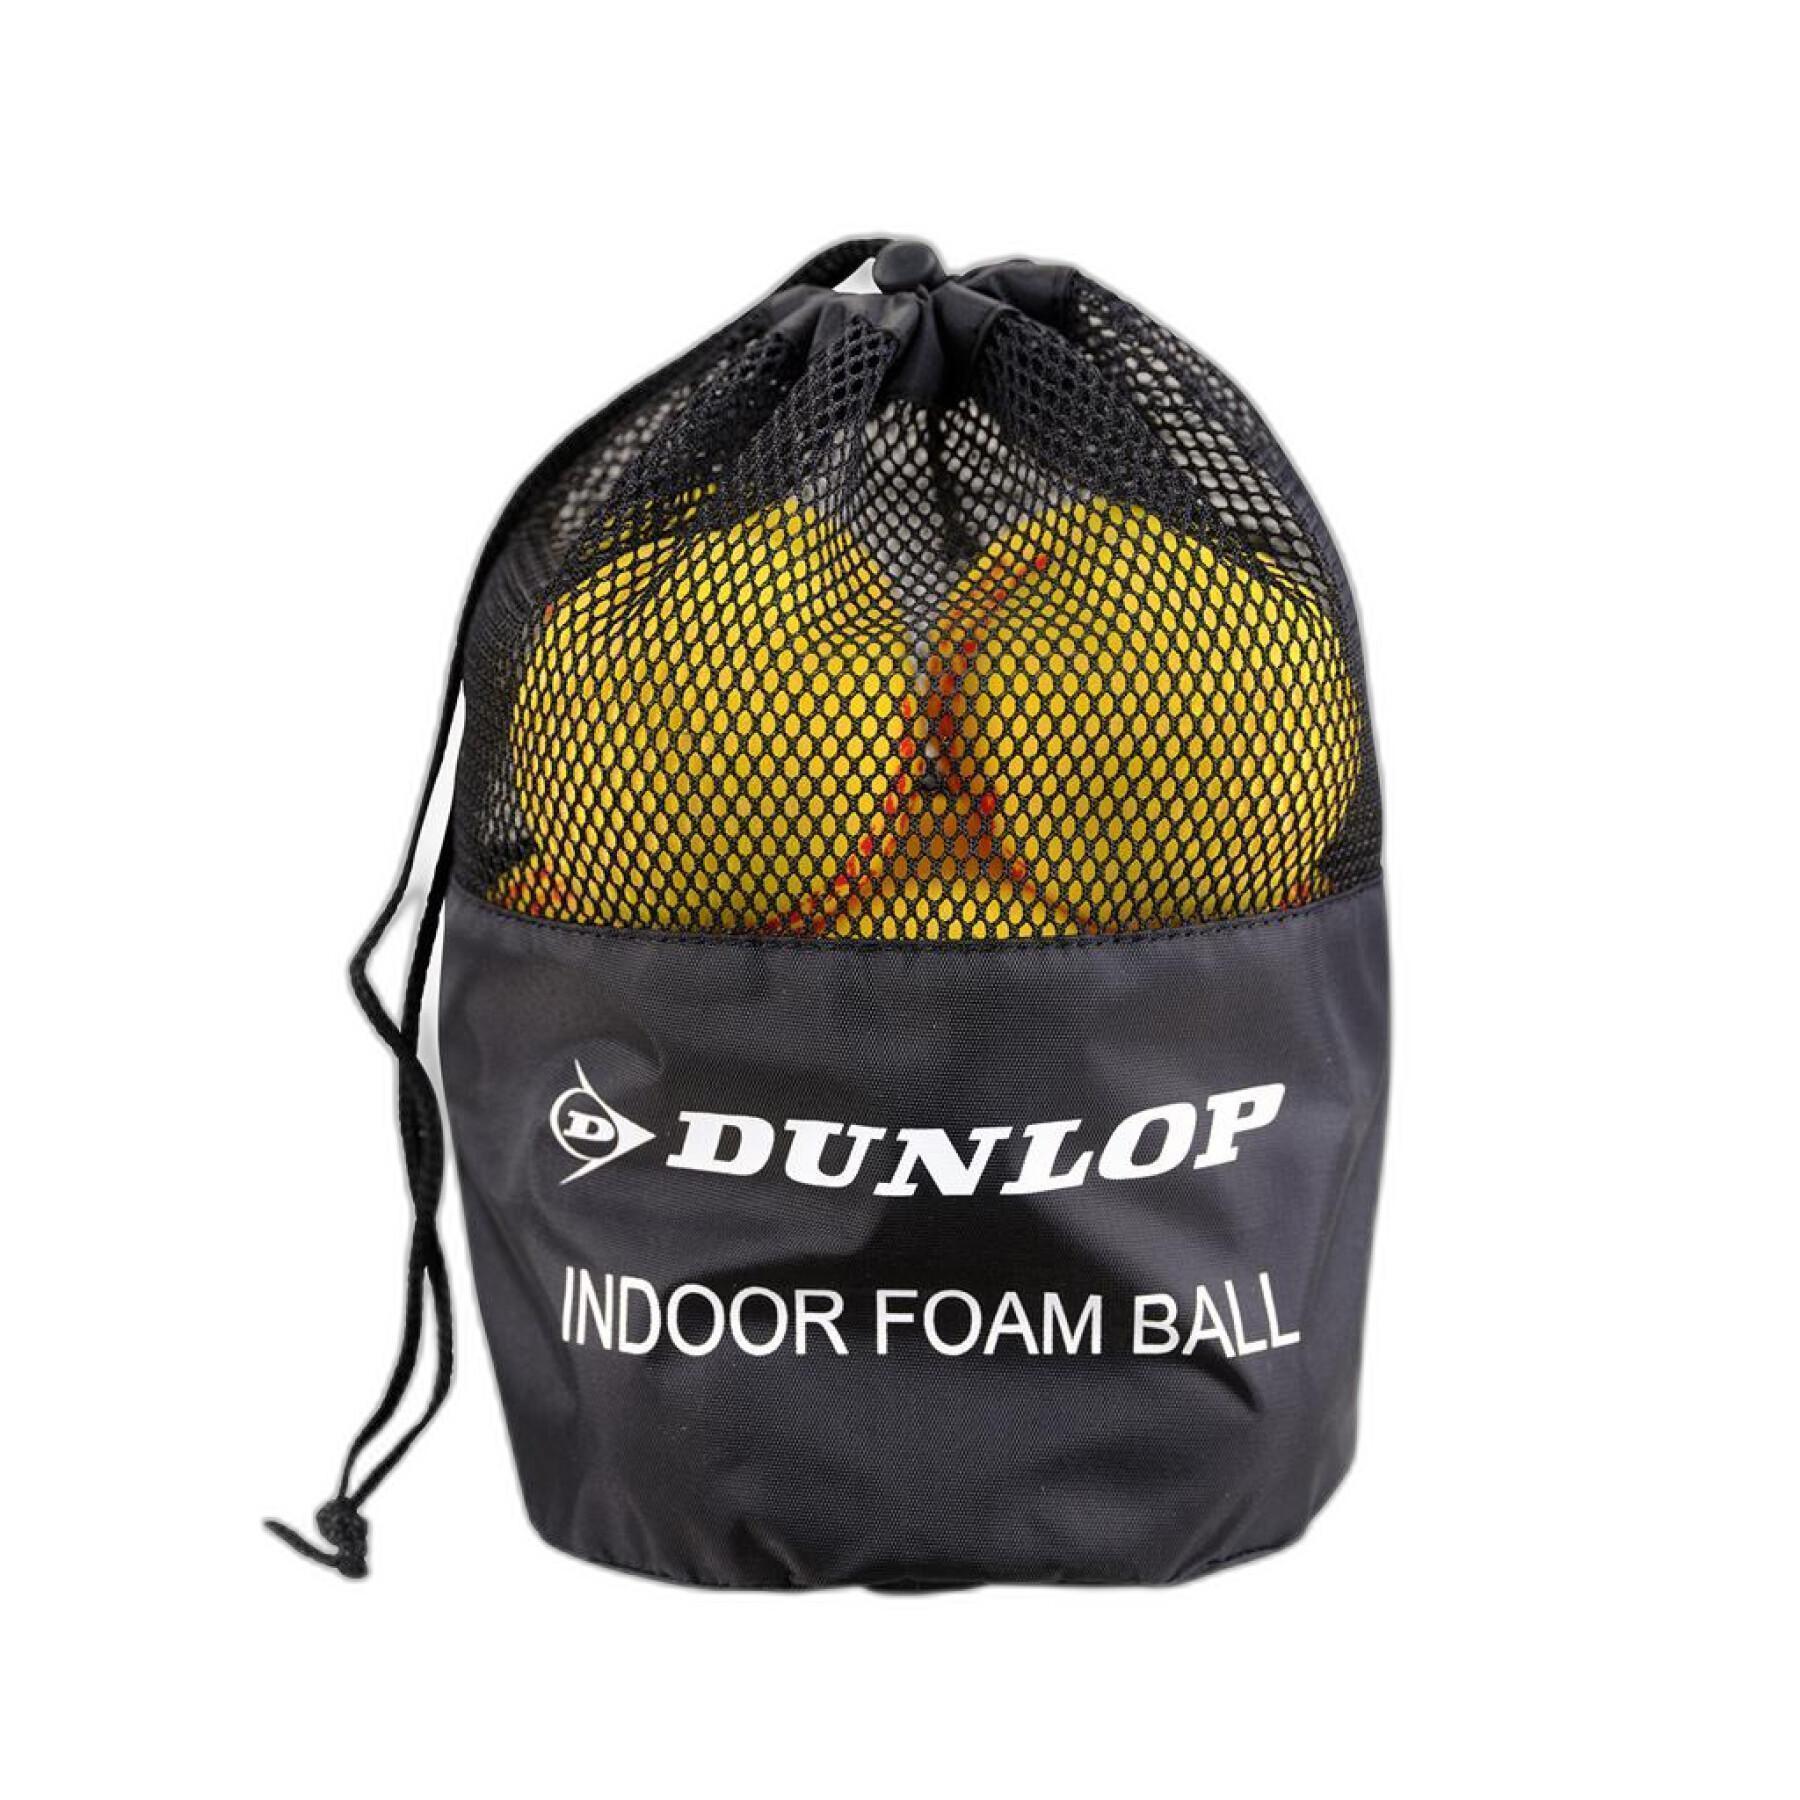 Lot de 12 balles de tennis Dunlop Indoor Foam